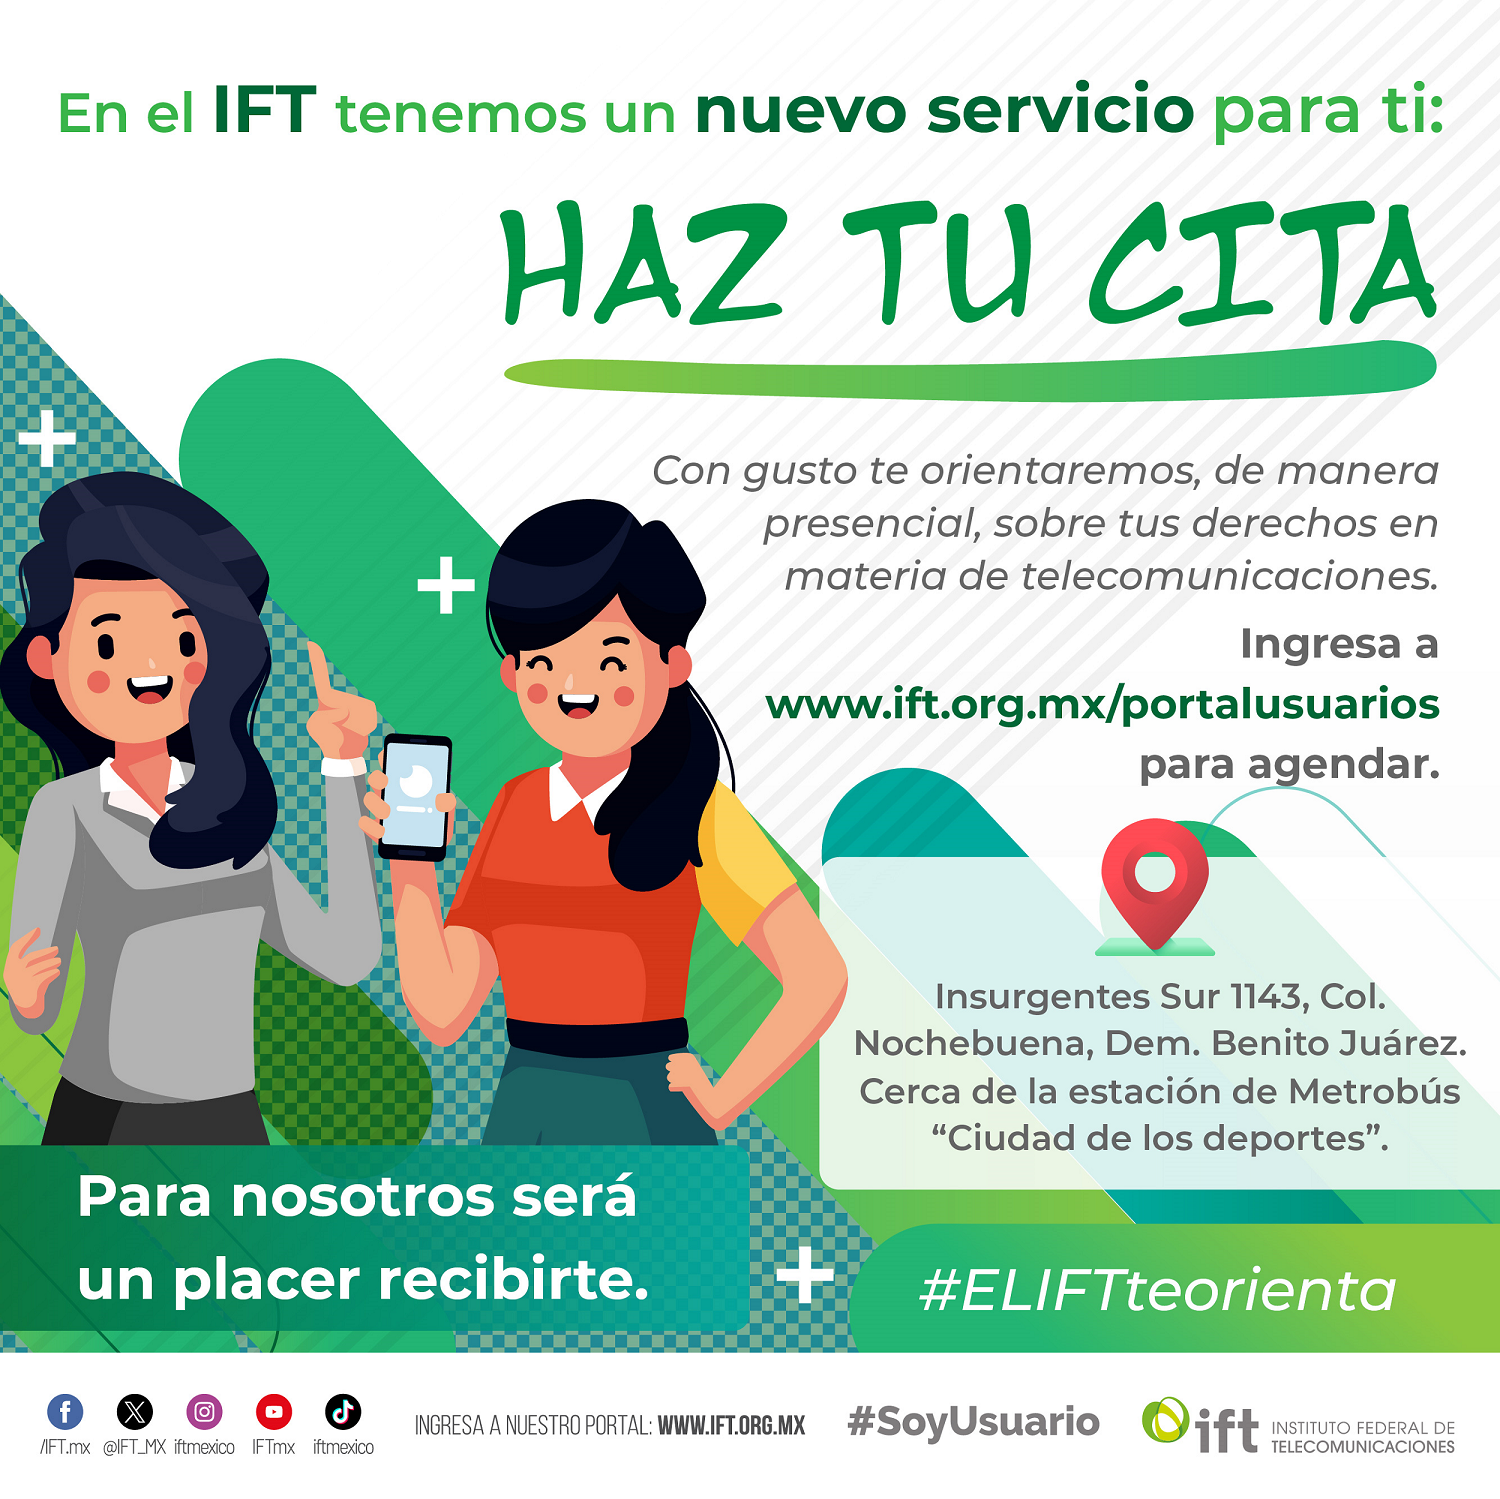 Nuevo servicio del IFT. Clic para más información.